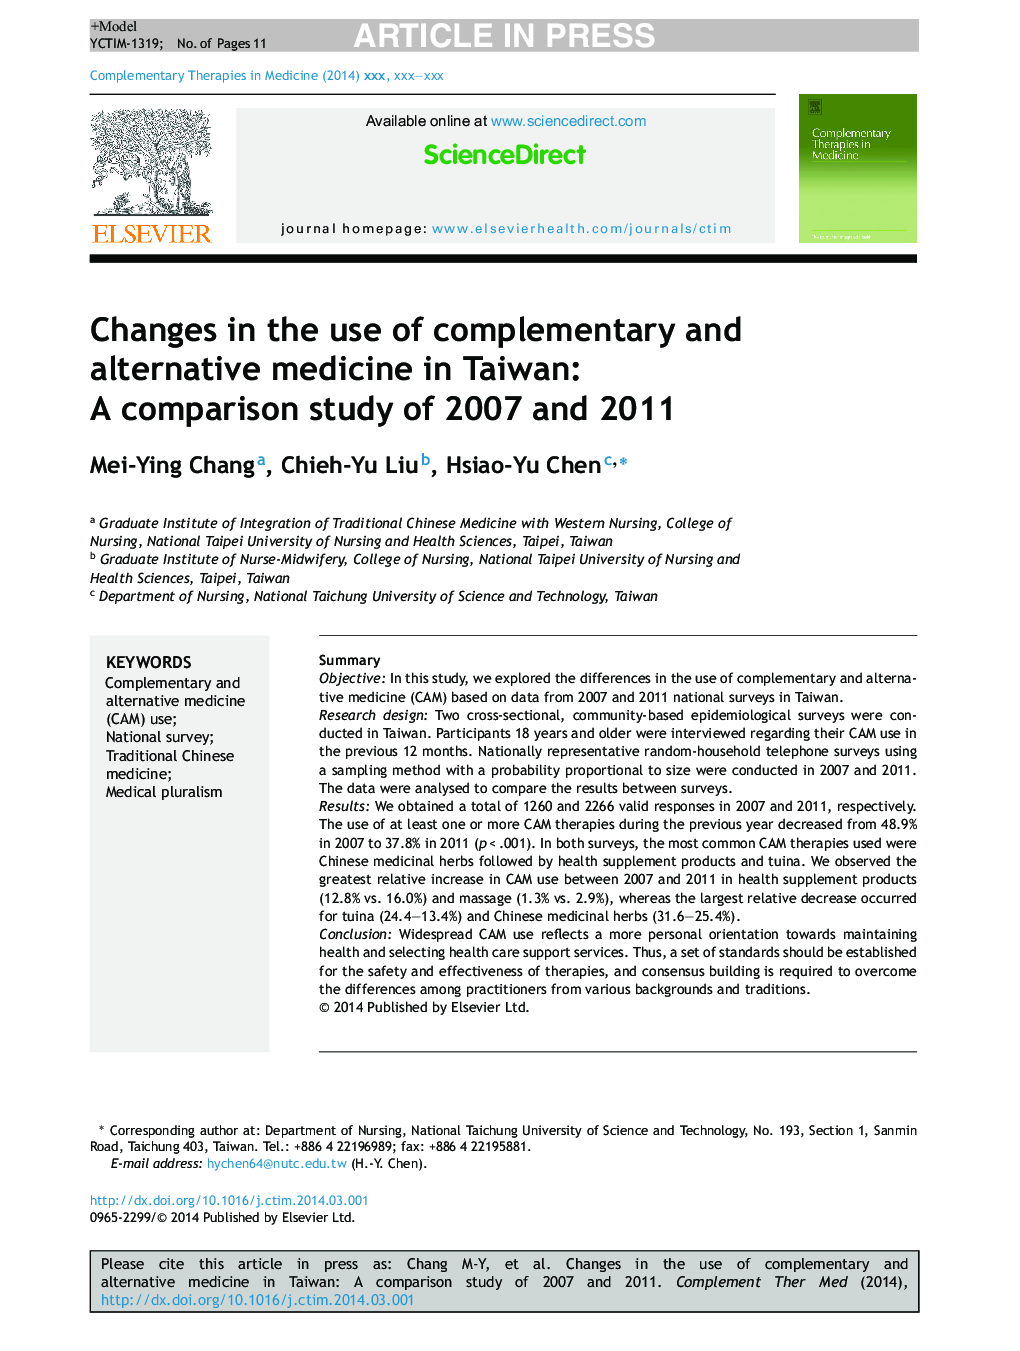 تغییرات در استفاده از داروهای مکمل و جایگزین در تایوان: مطالعه مقایسه ای در سال های 2007 و 2011 